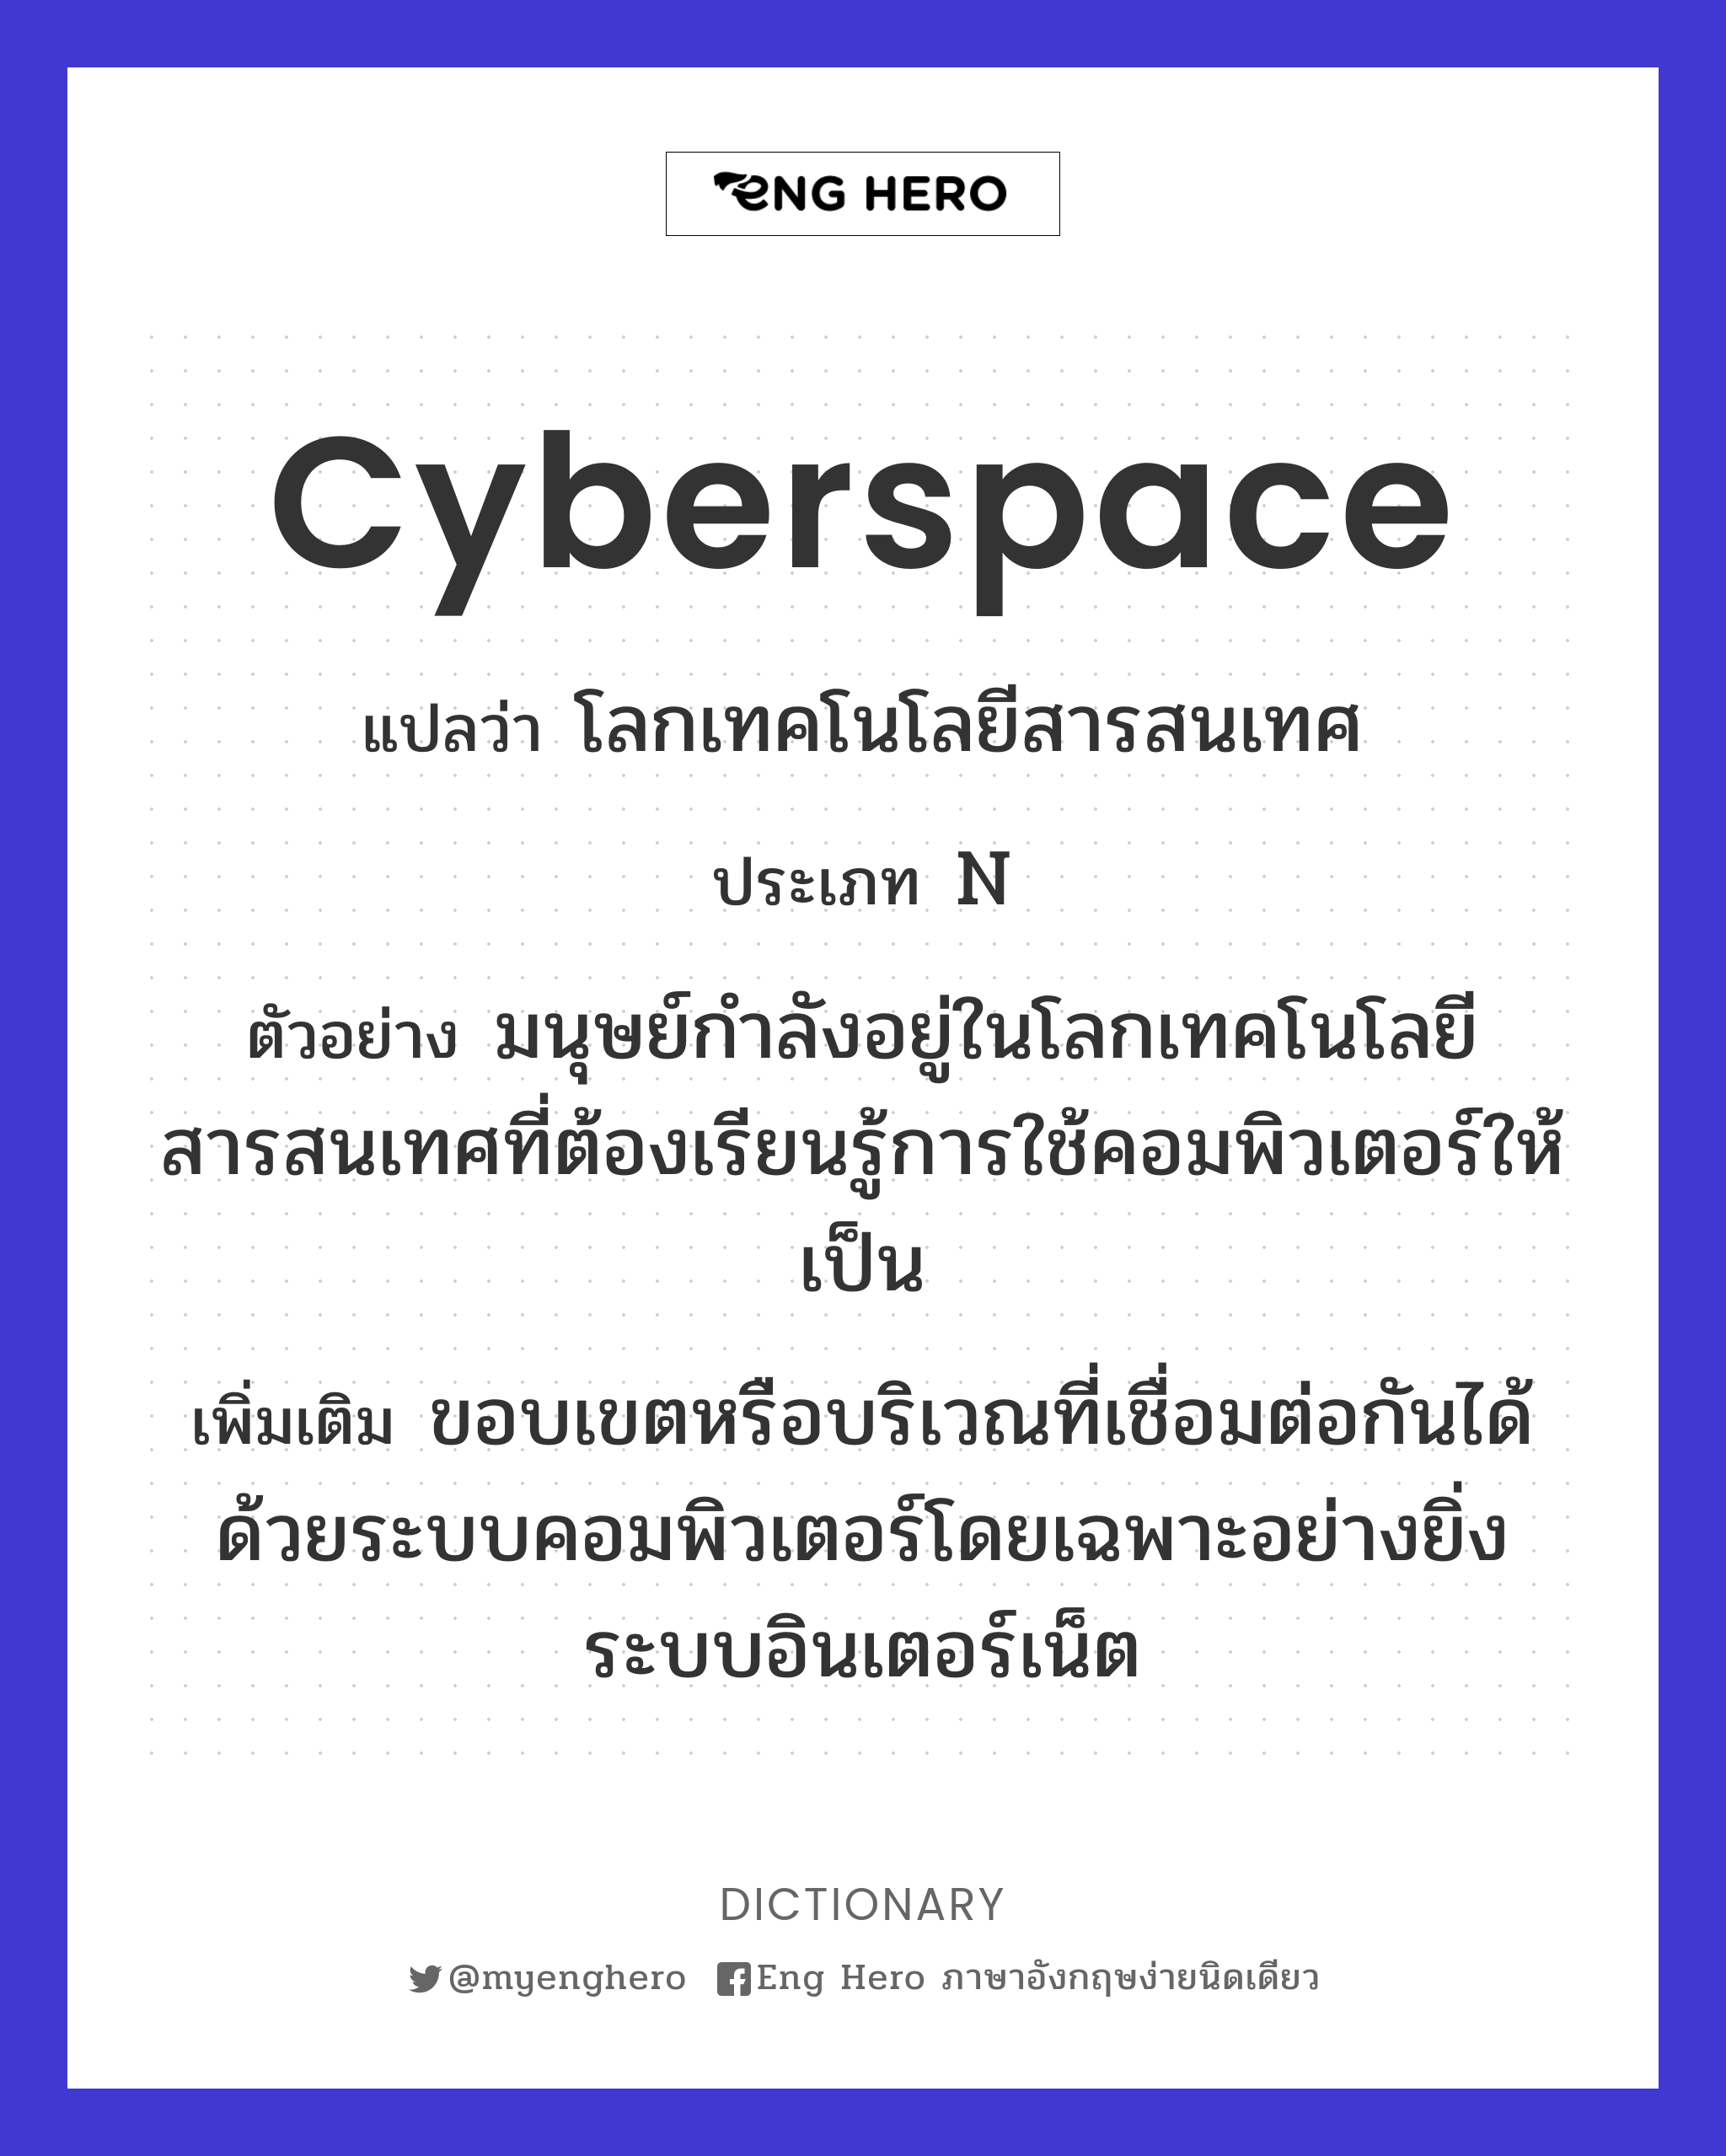 cyberspace